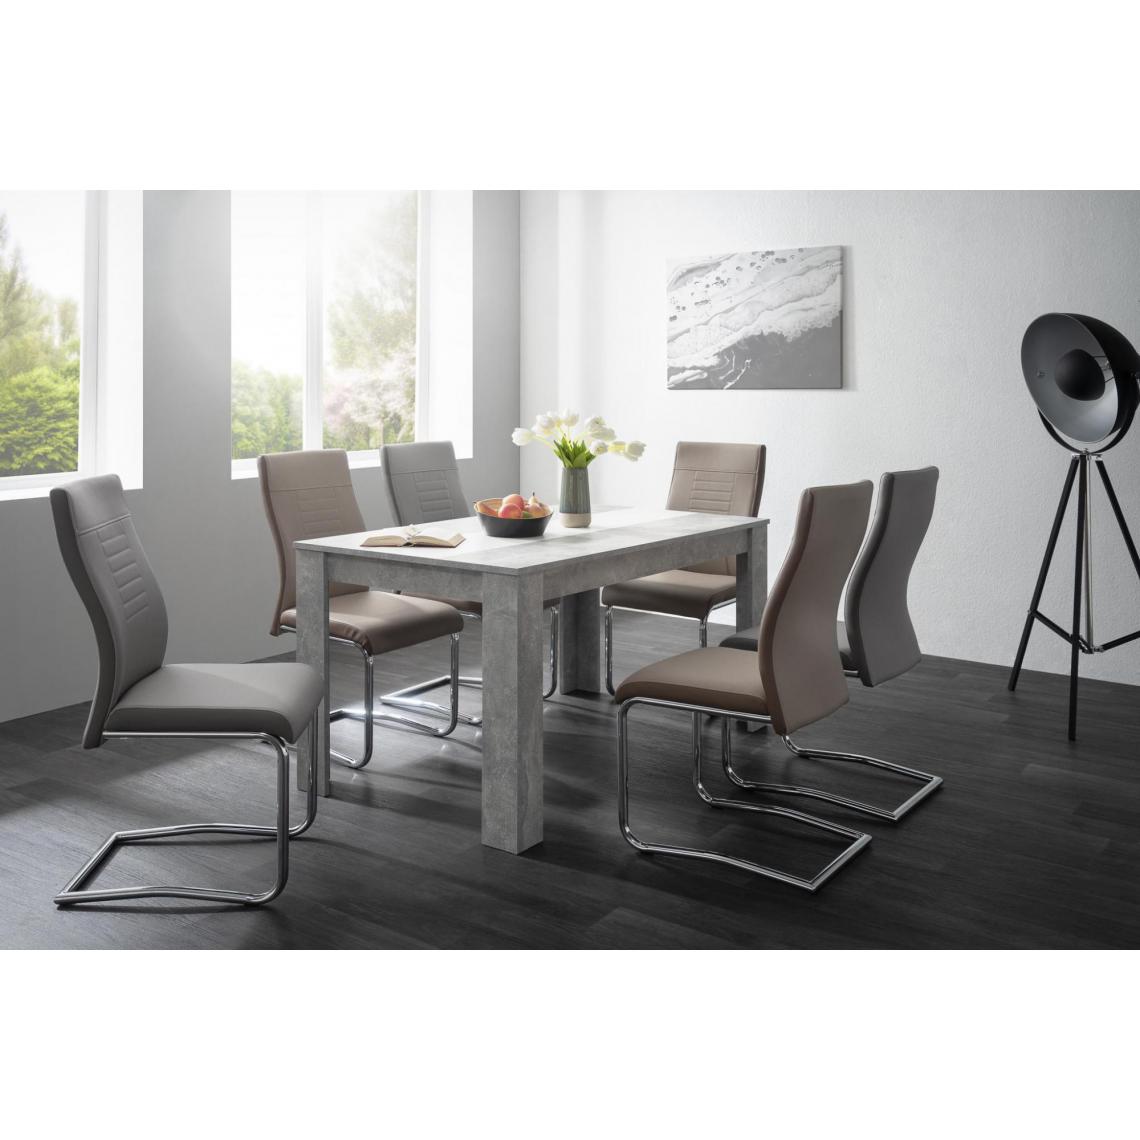 Alter - Table avec panneau central réversible, couleur béton avec panneau réversible noir et blanc, 138 x 74 x 80 cm. - Tables à manger